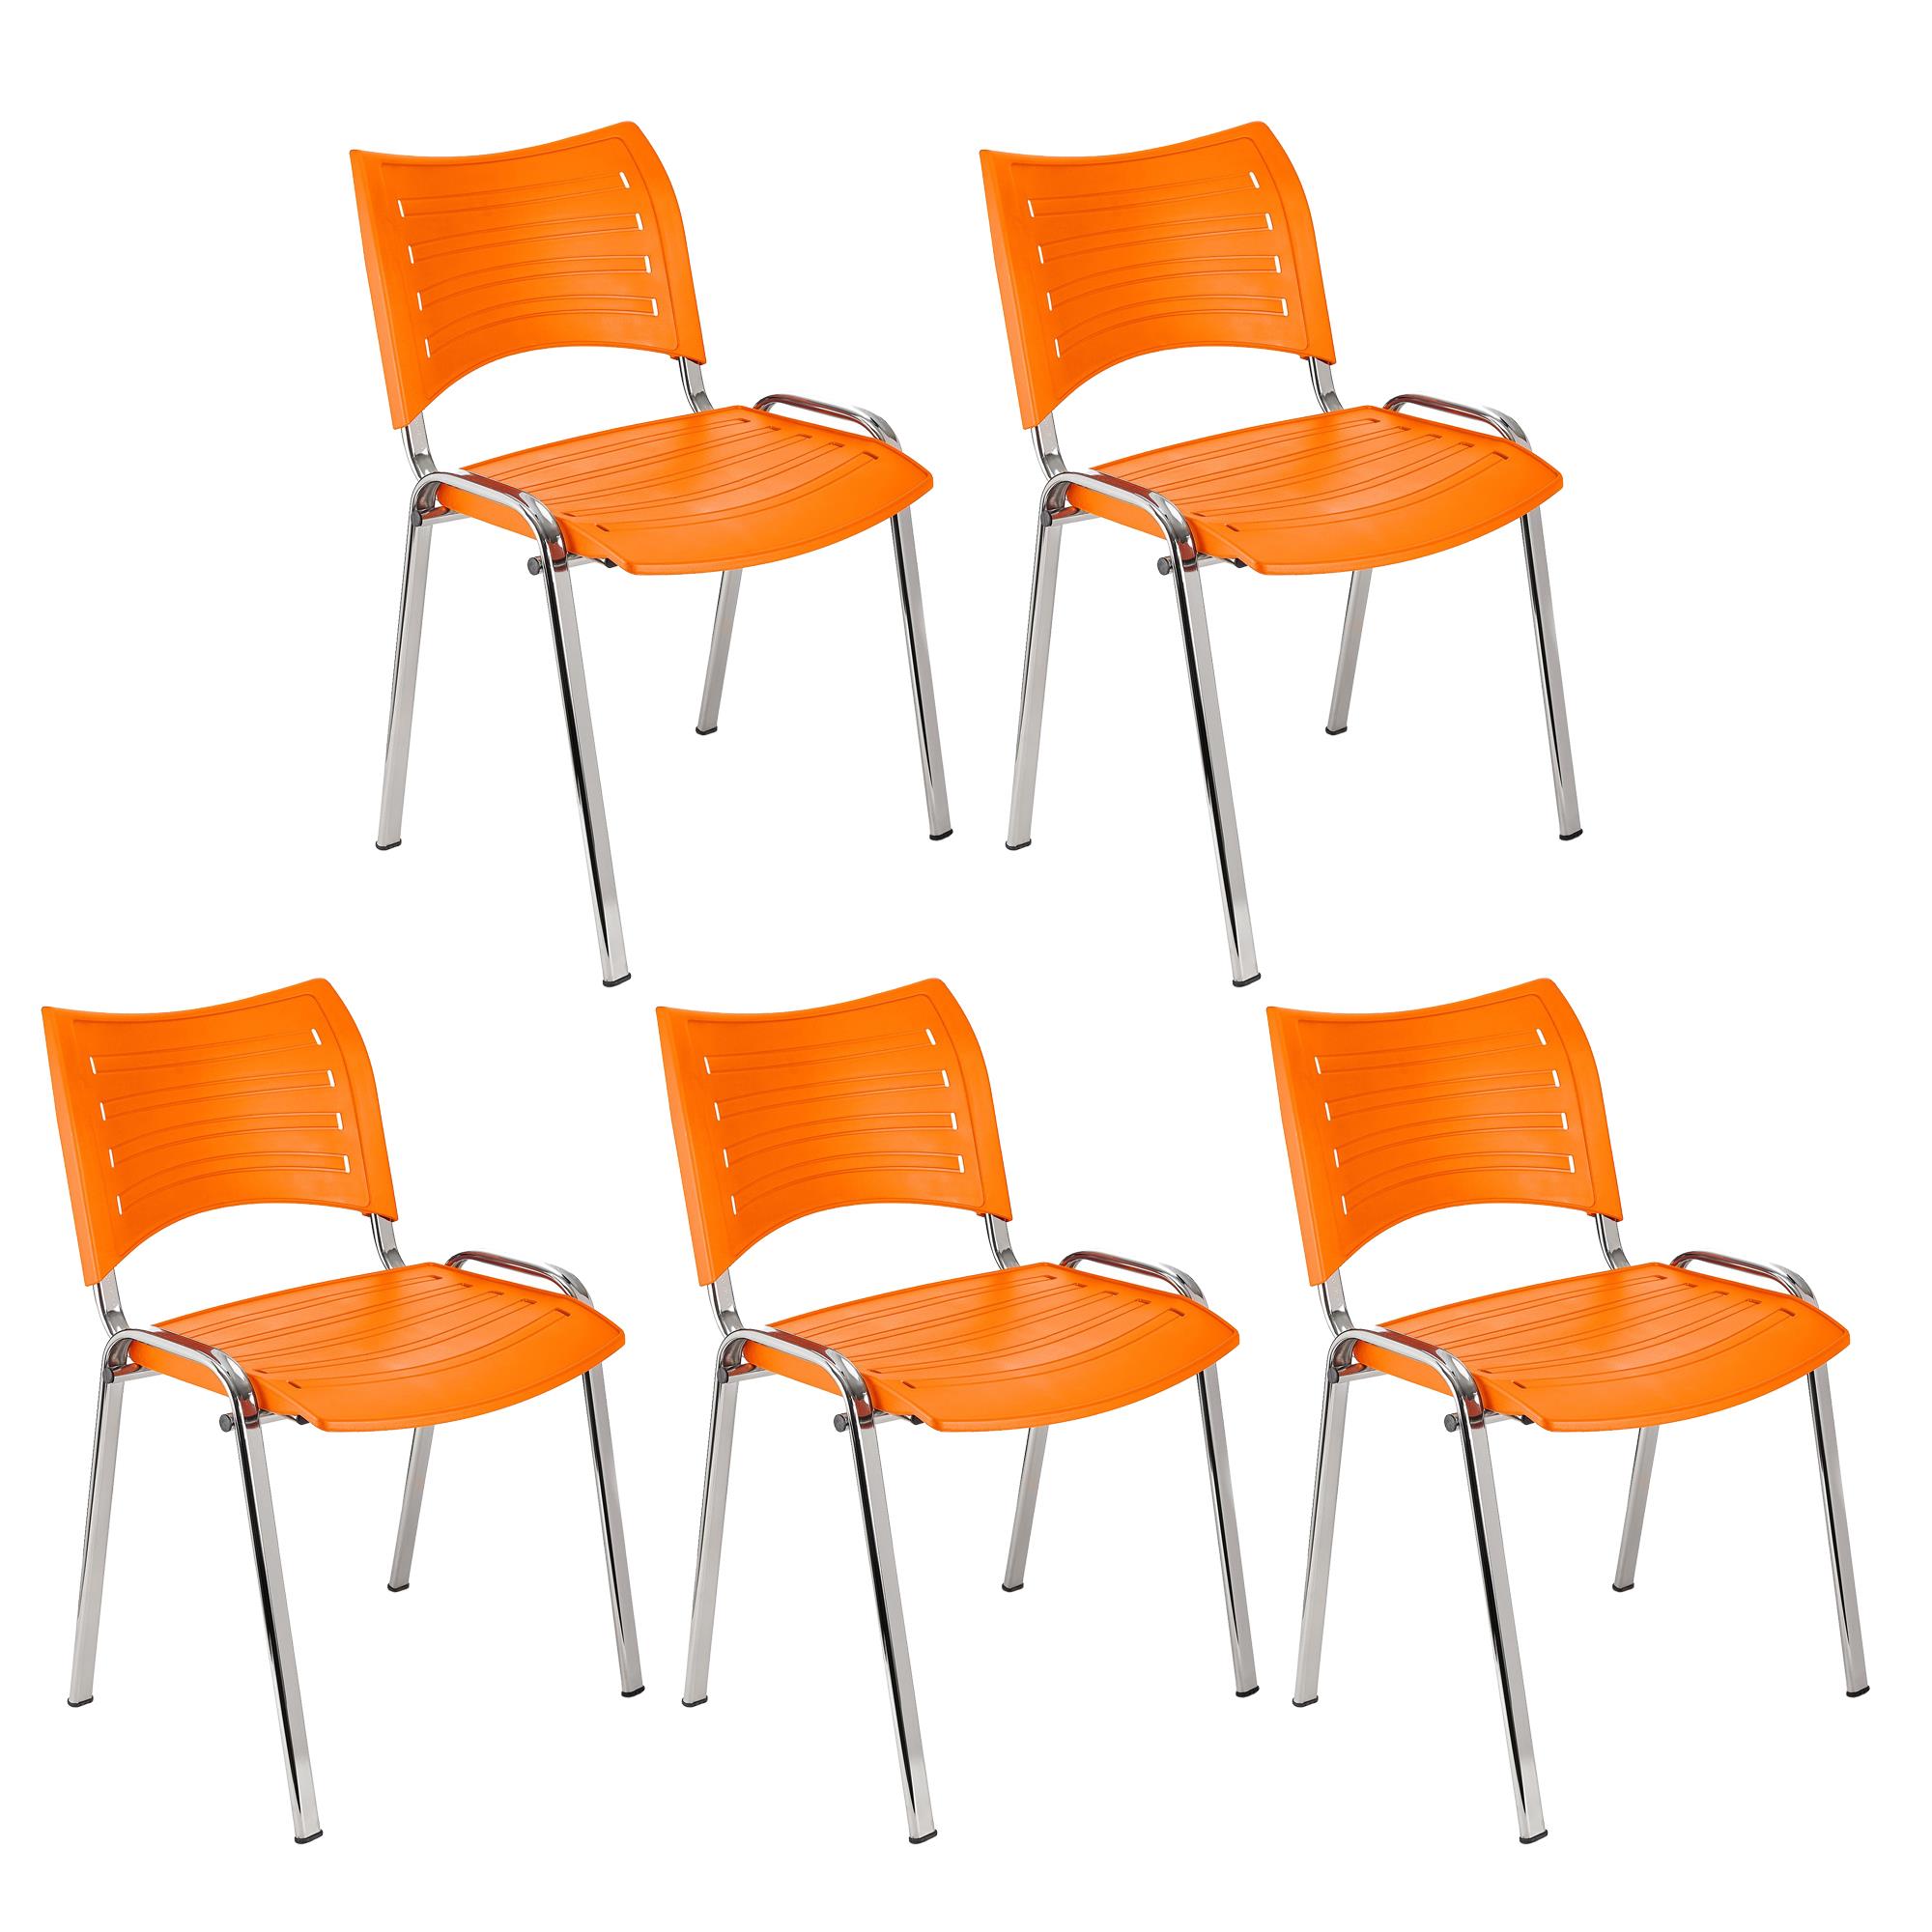 Im 5er-Set: Besucherstuhl ELVA C, stapelbar und sehr praktisch, Stuhlbeine aus verchromtem Stahl, Farbe Orange